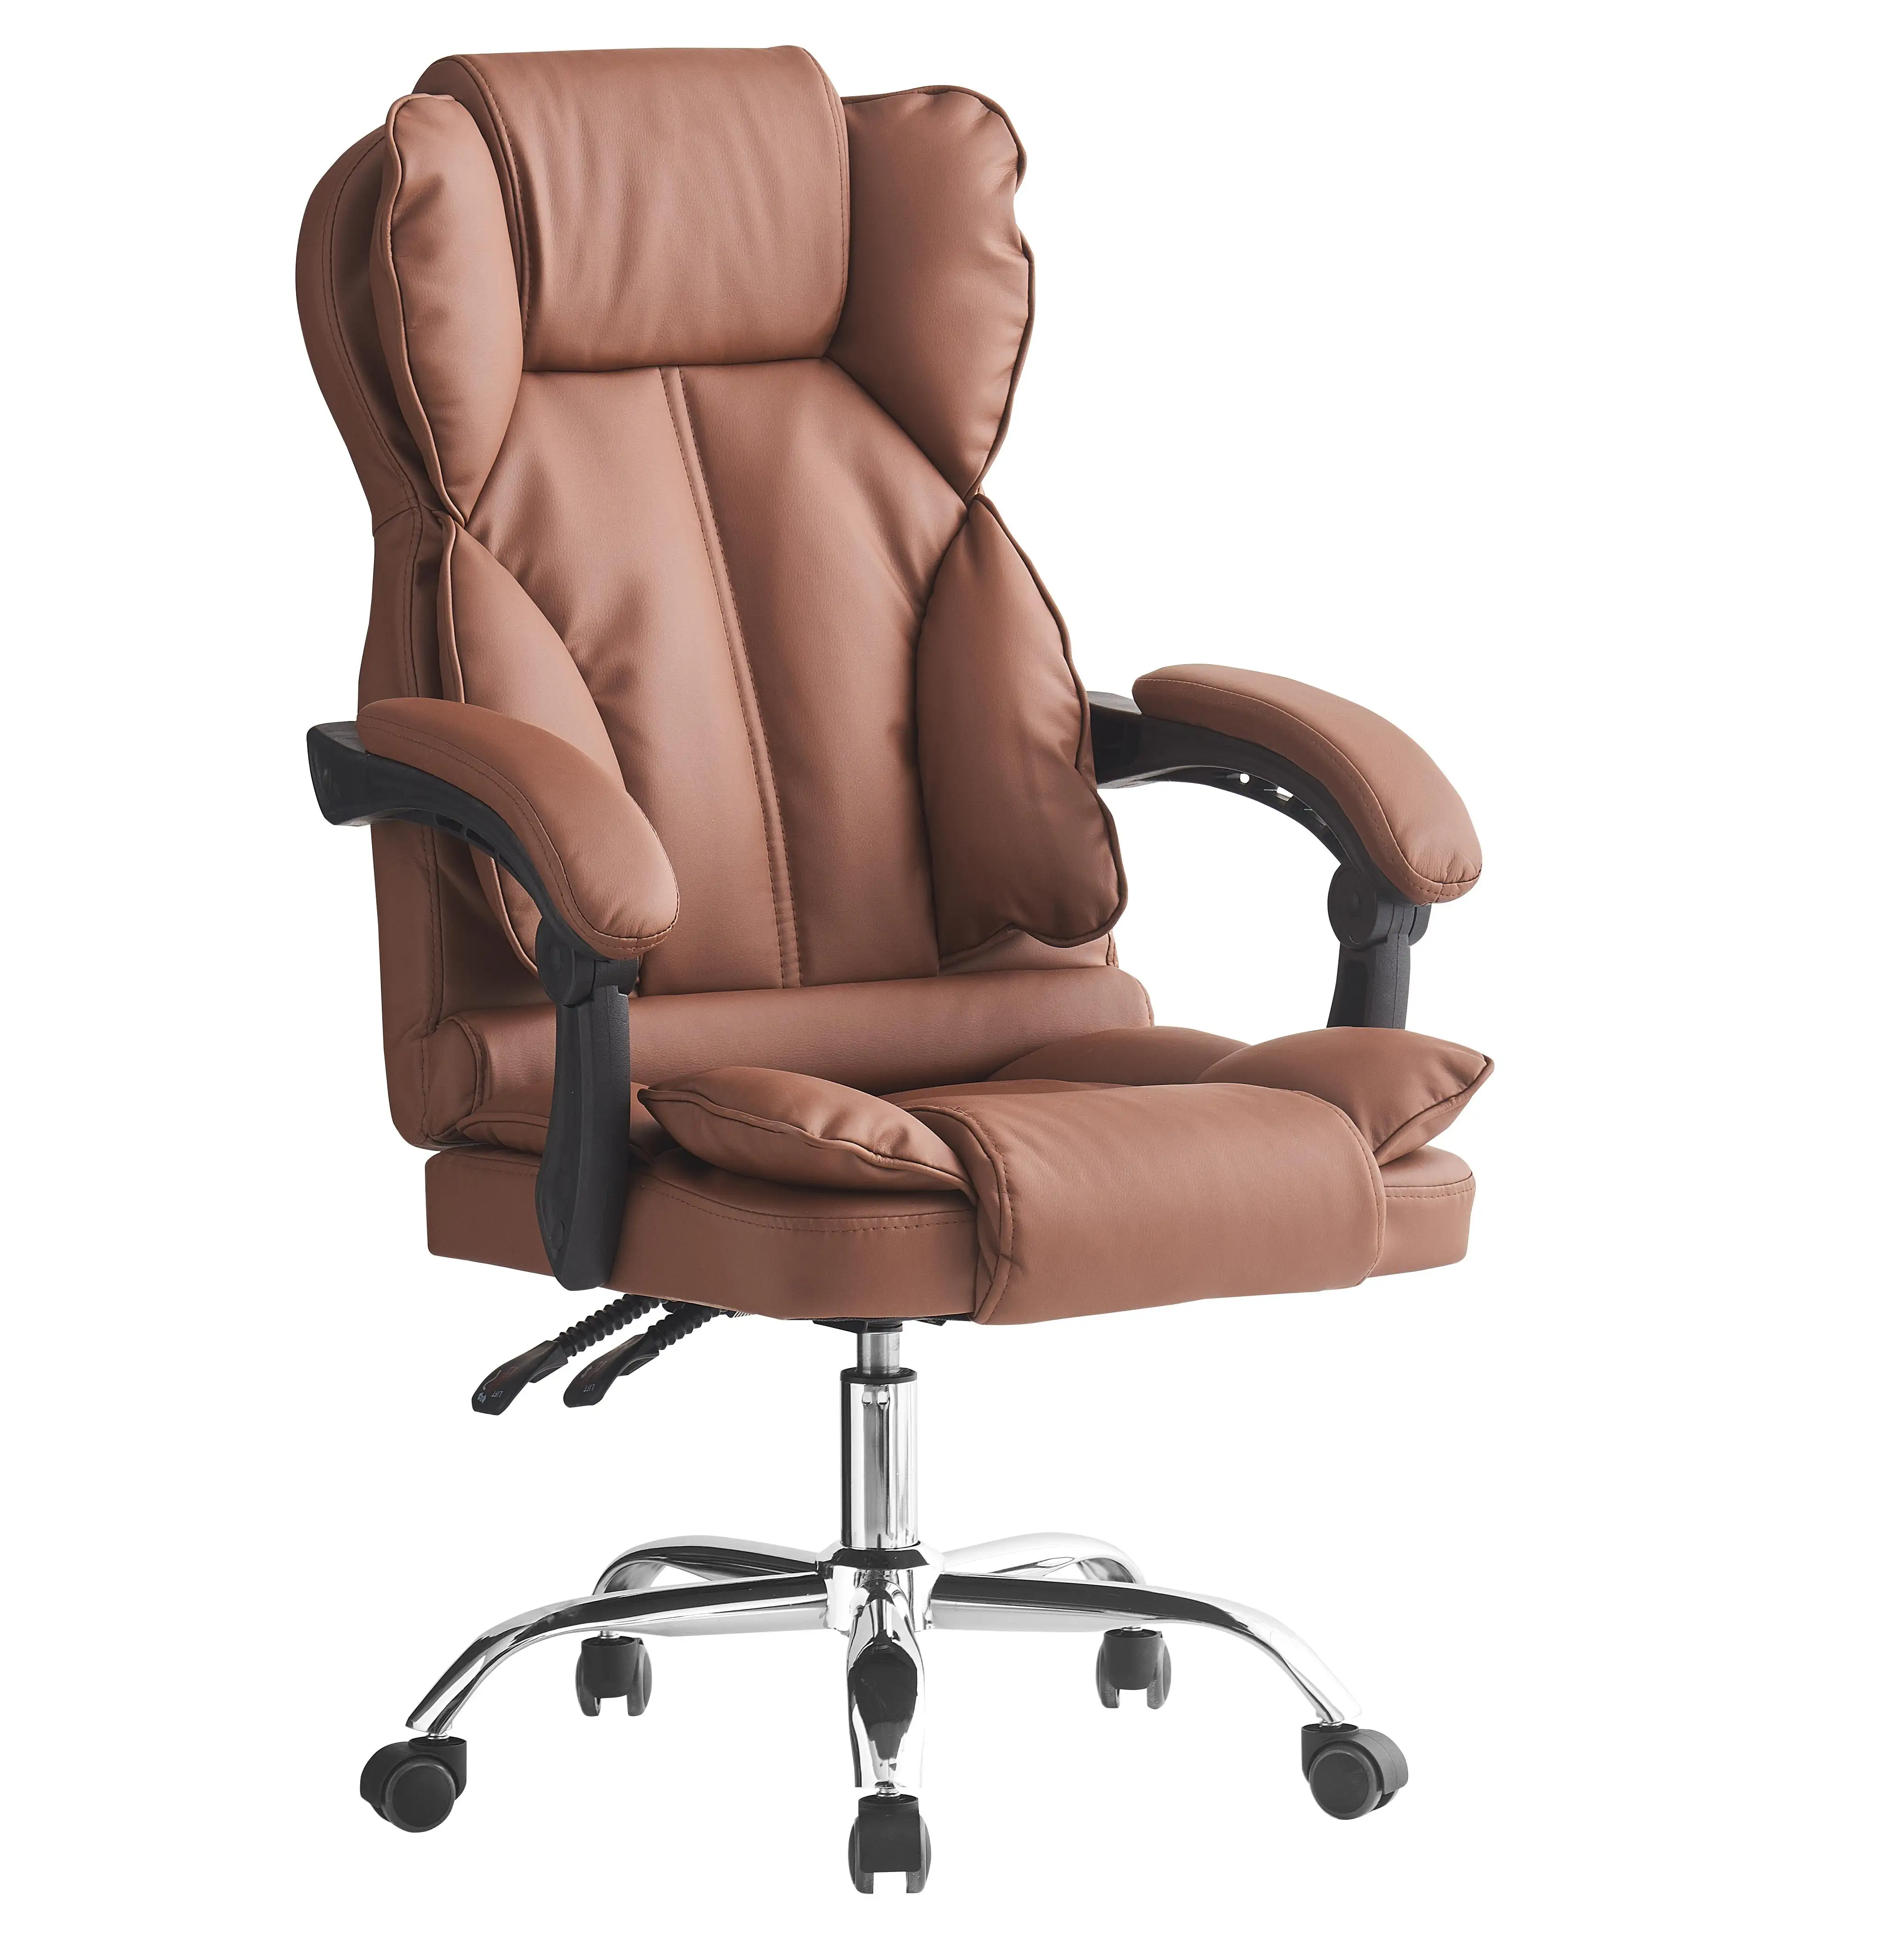 كرسي مكتب من الشركة المصنعة الأكثر مبيعاً كرسي من الجلد بتصميم بسيط وعصري